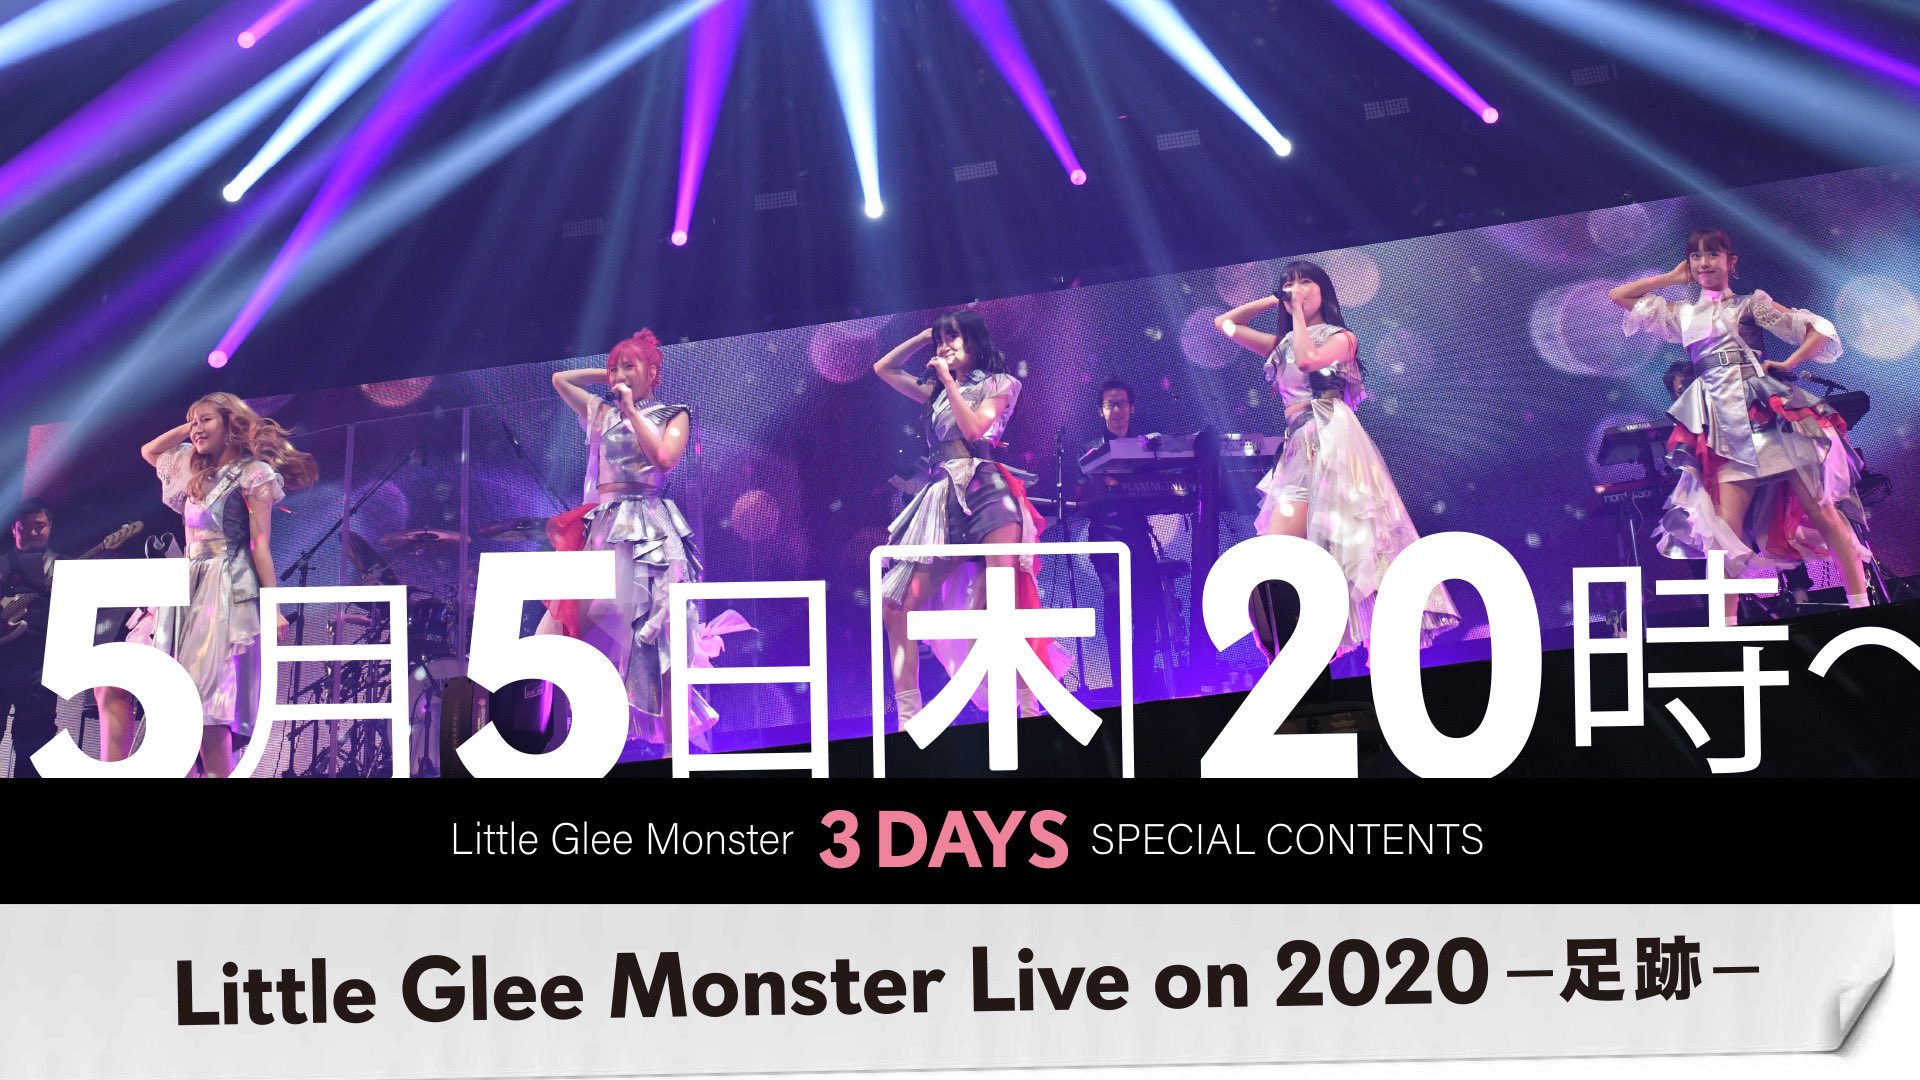 Little Glee Monster Gw3日間連続でライブ映像youtube無料公開 5 5 5 7 ライブ配信カレンダー22 オンラインライブ毎日まとめ